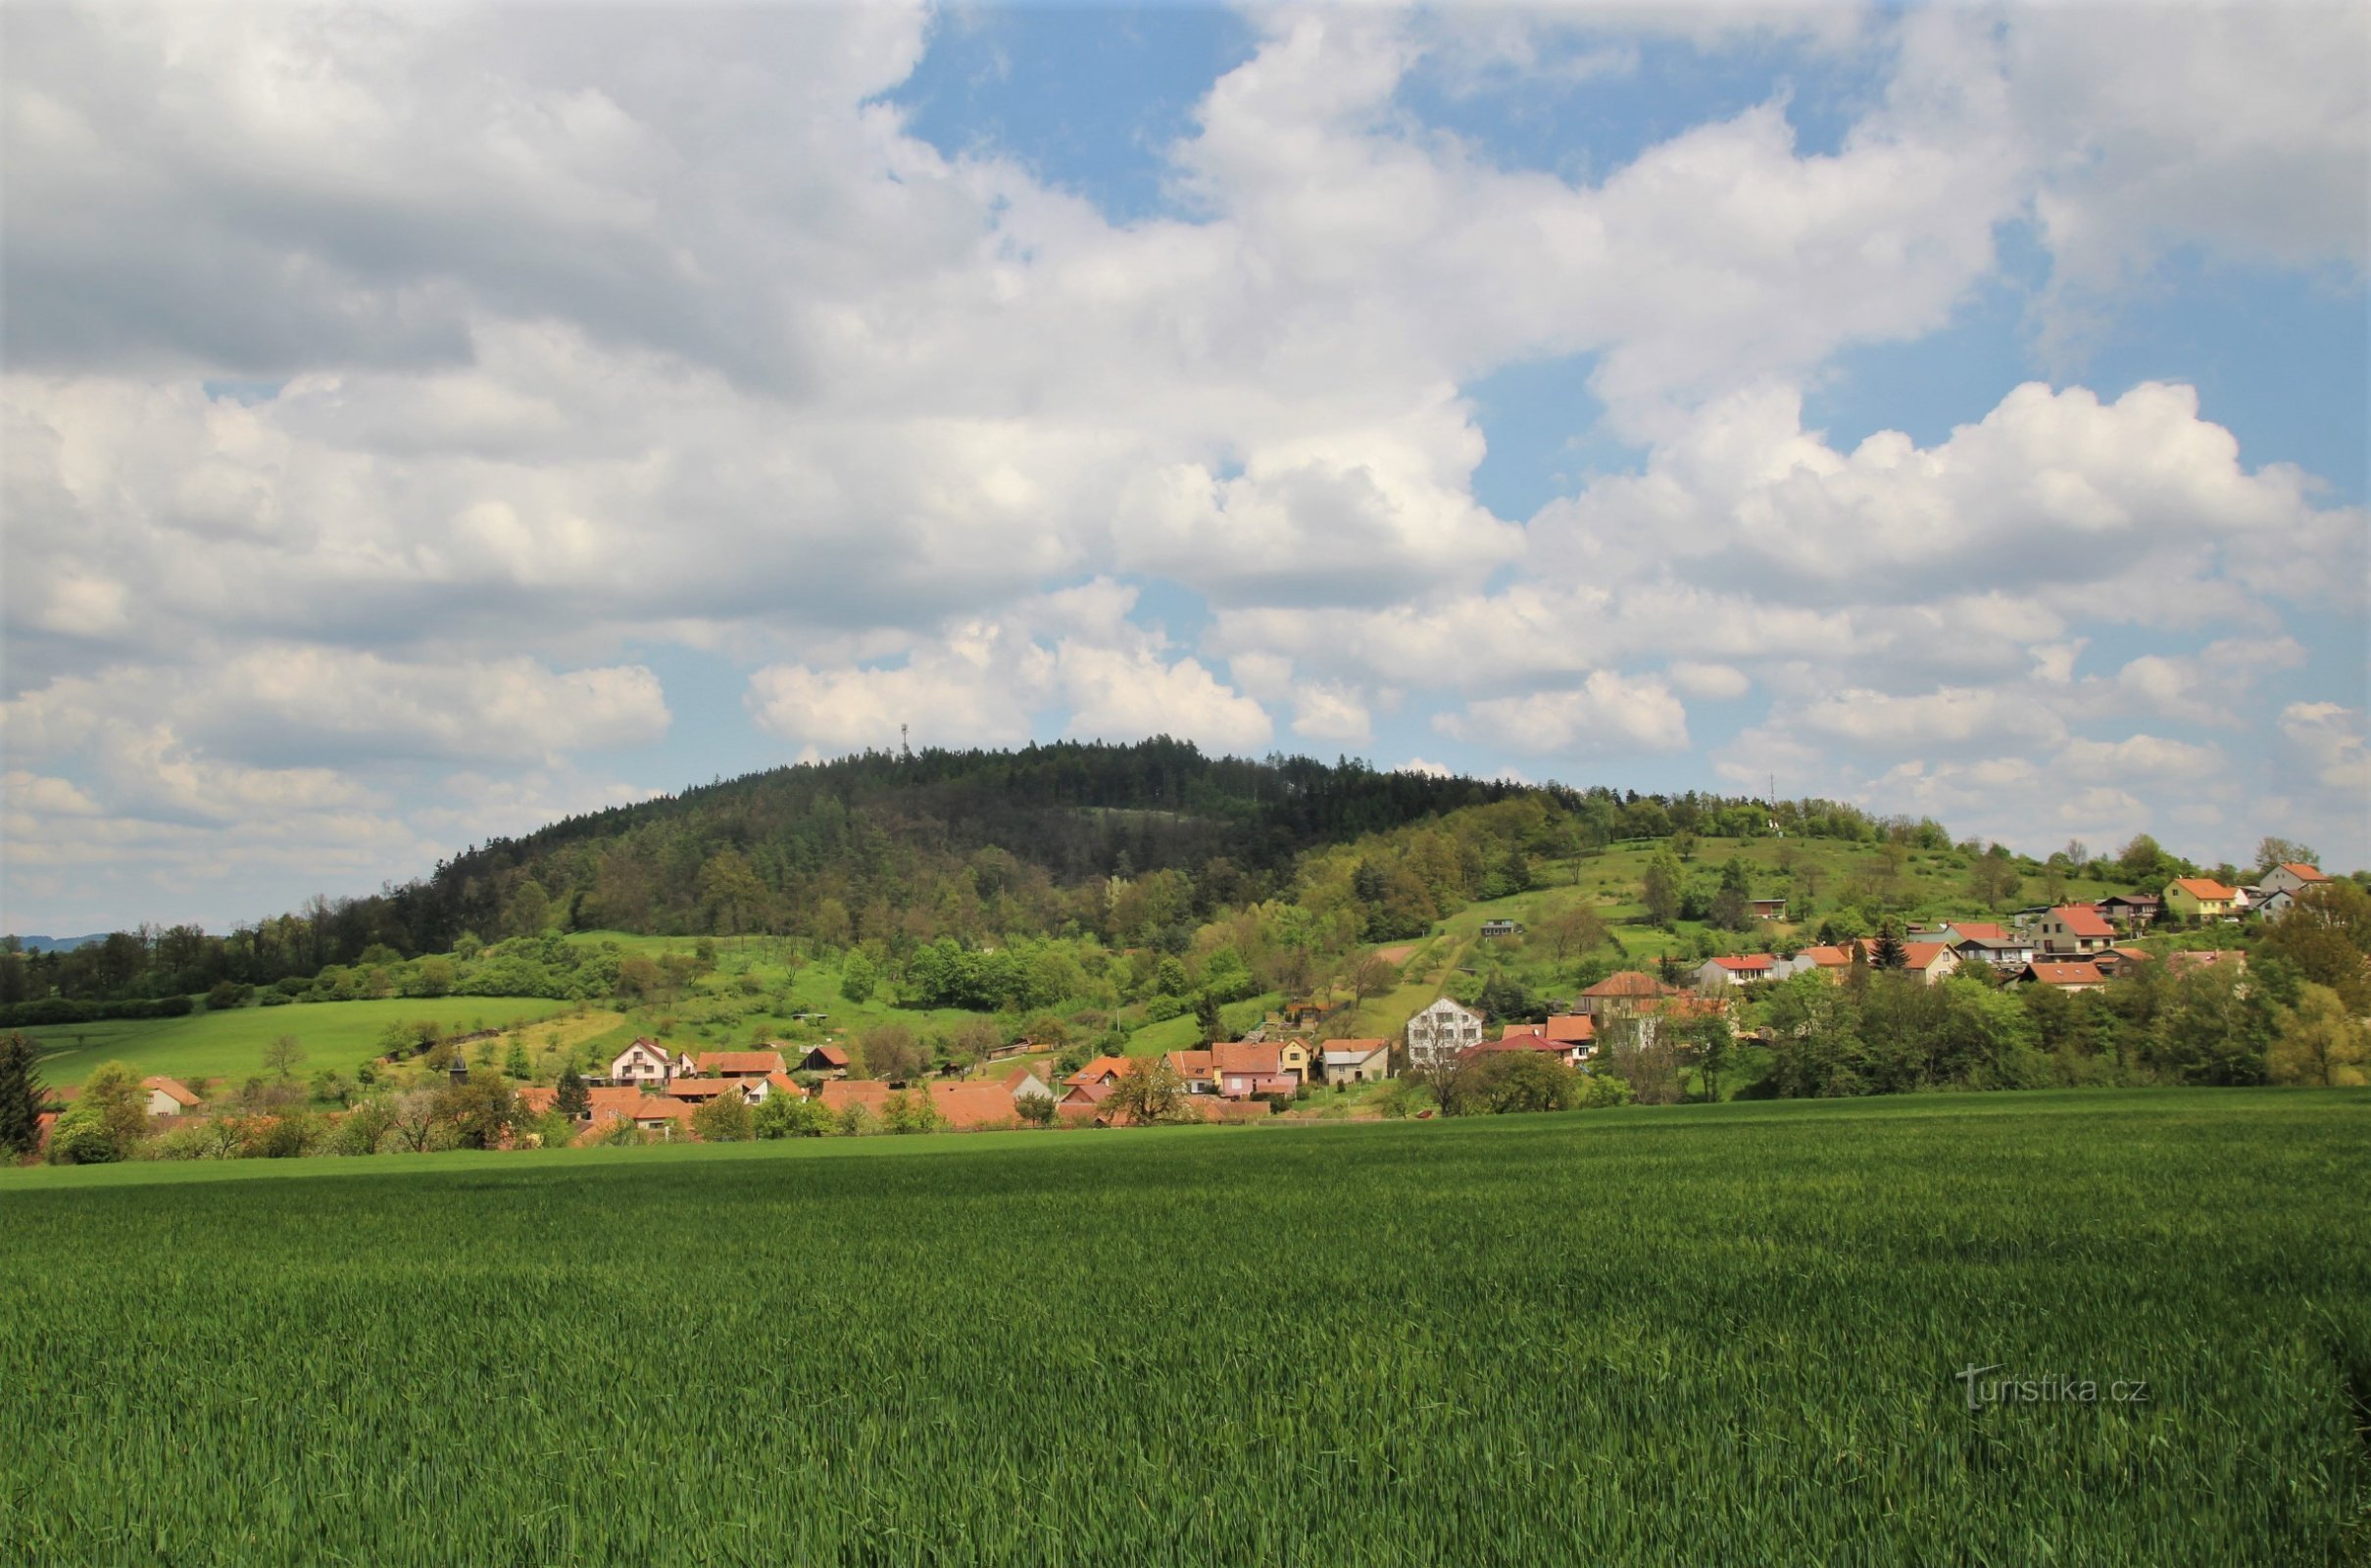 Näkymä Fáberkan harjulle, etualalla Jabloňanyn kylä, oikealla on näköala harjulle